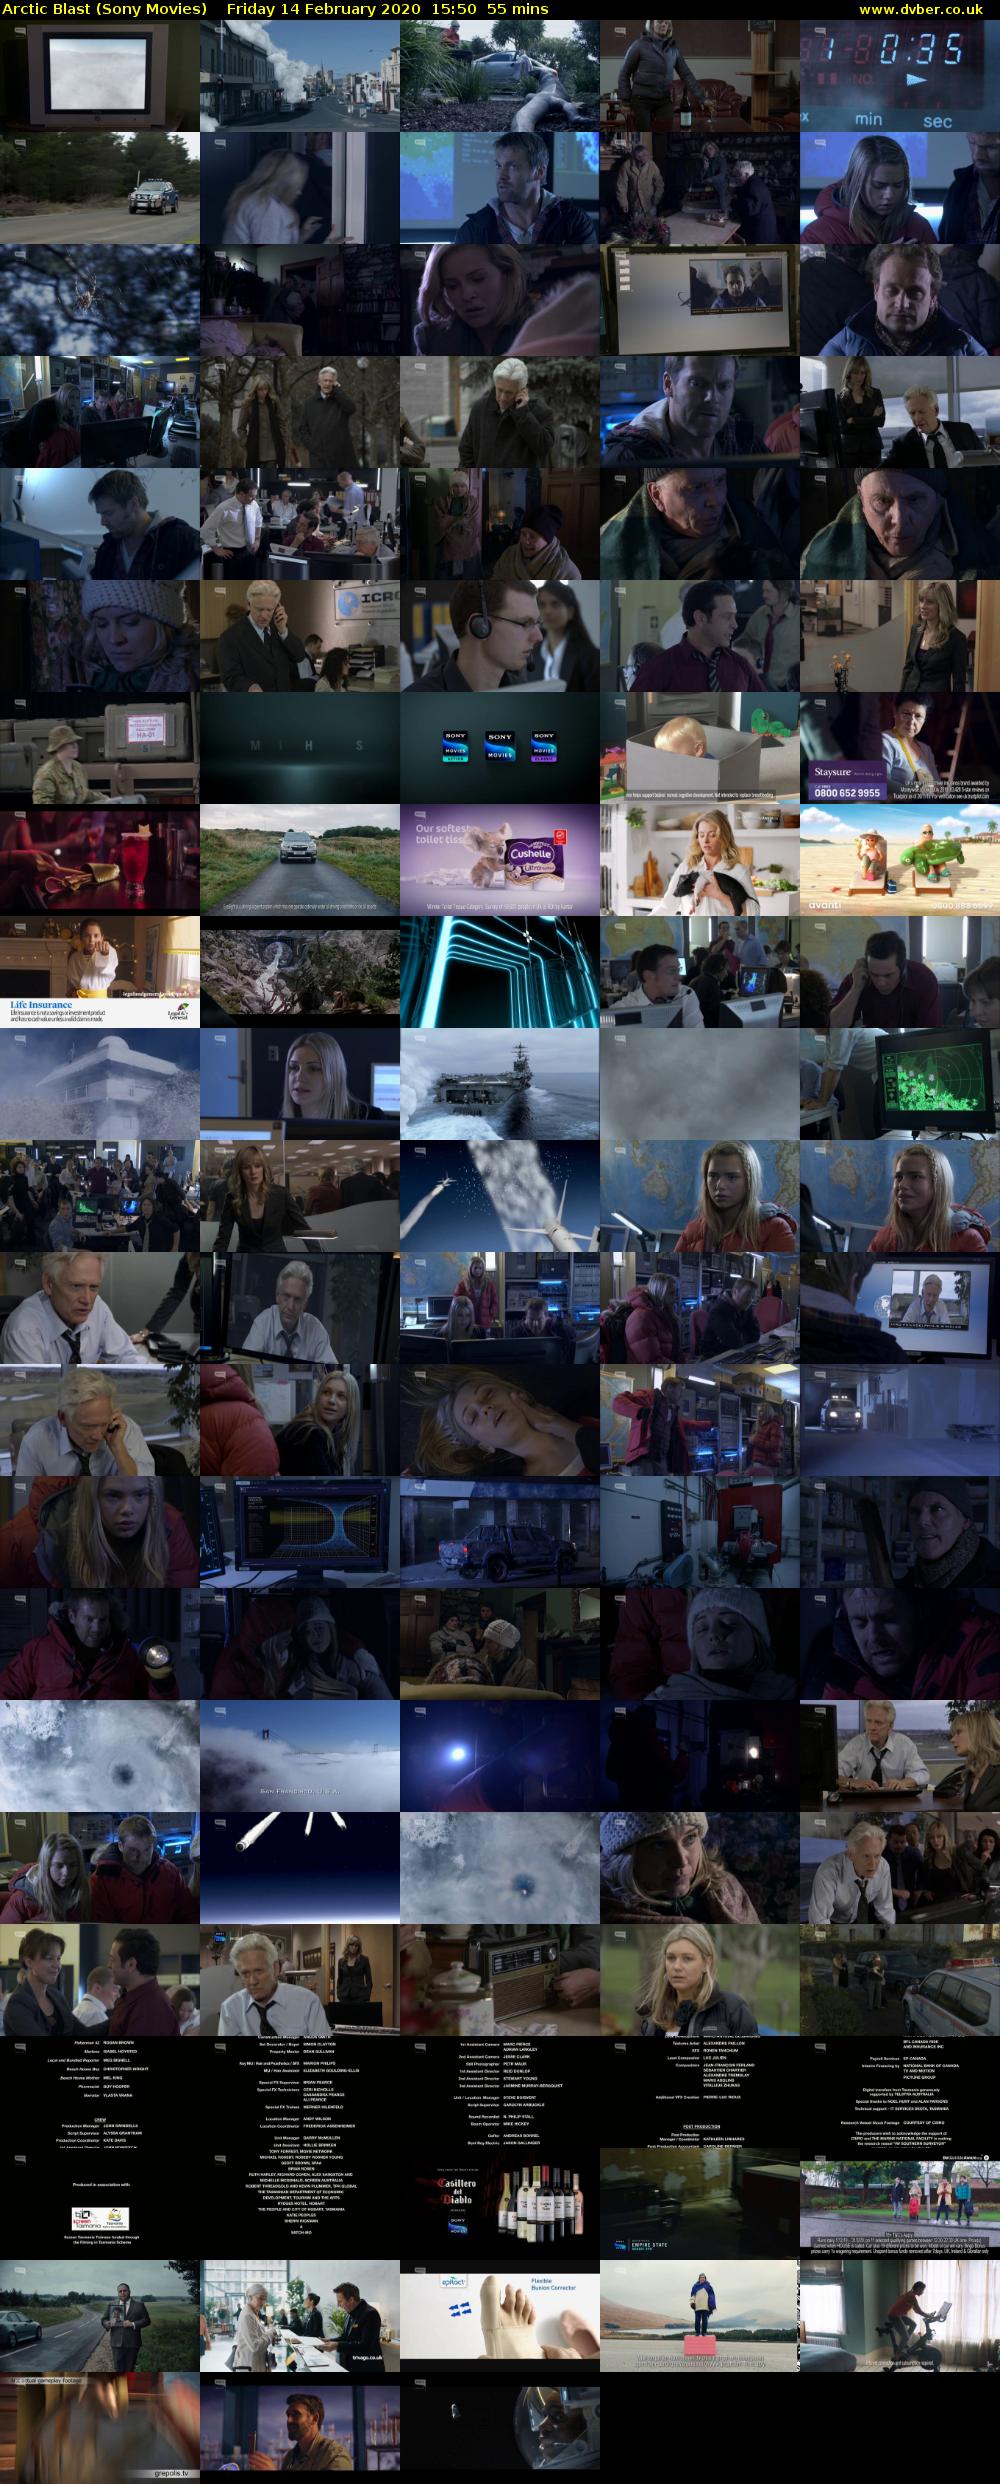 Arctic Blast (Sony Movies) Friday 14 February 2020 15:50 - 16:45